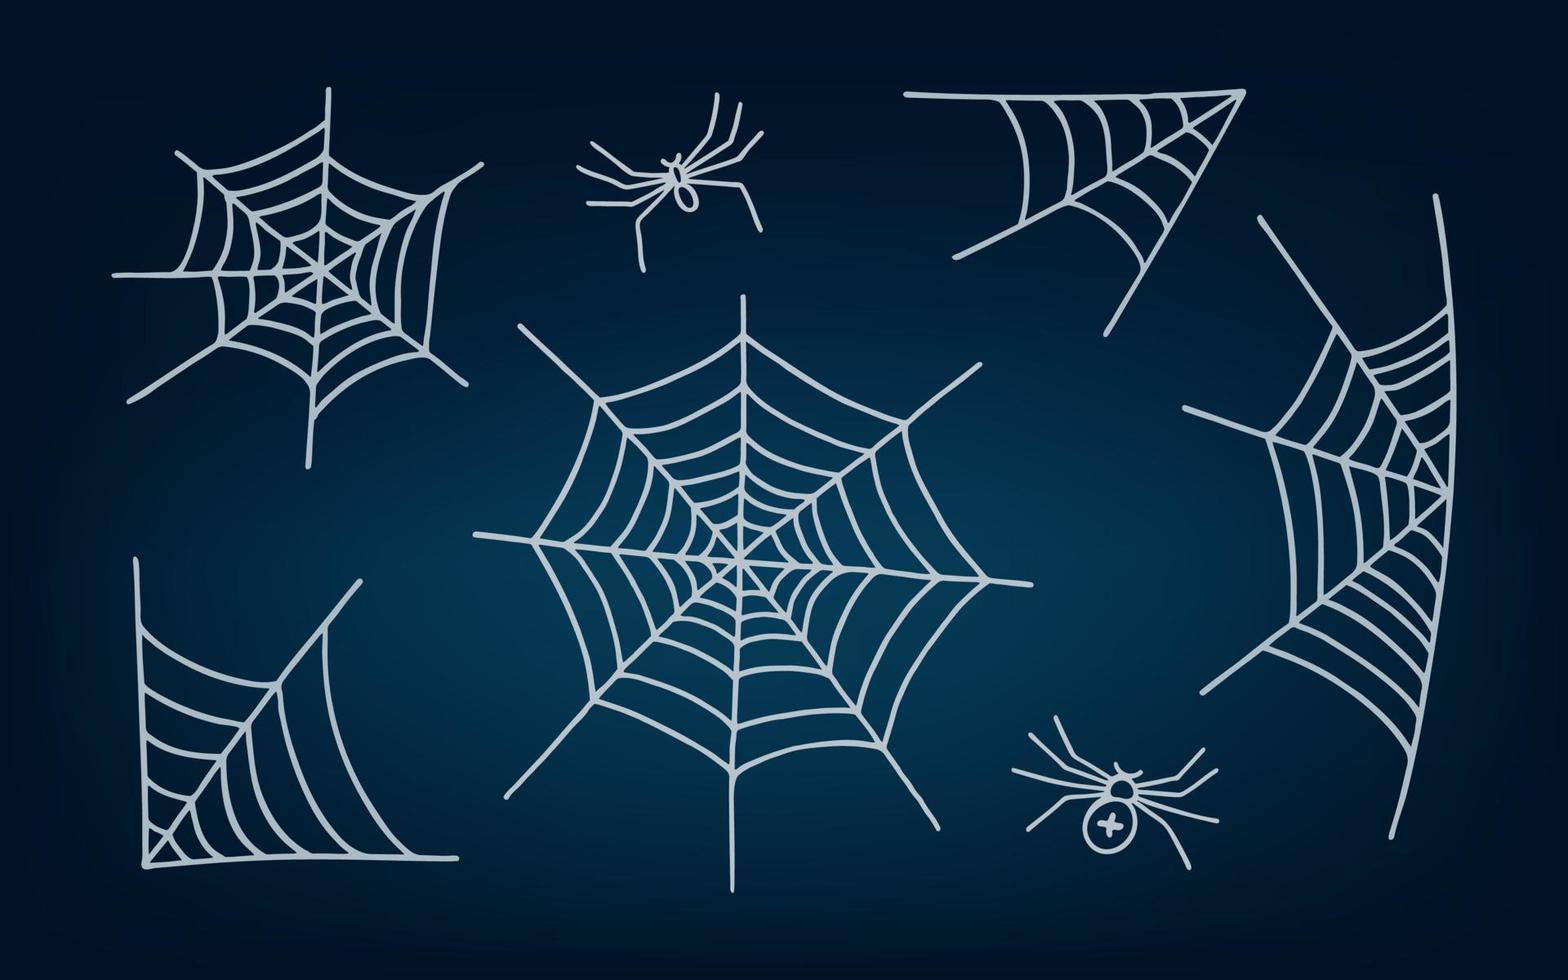 uppsättning av spindelnät och spindlar på mörk bakgrund. vektor illustration för halloween.